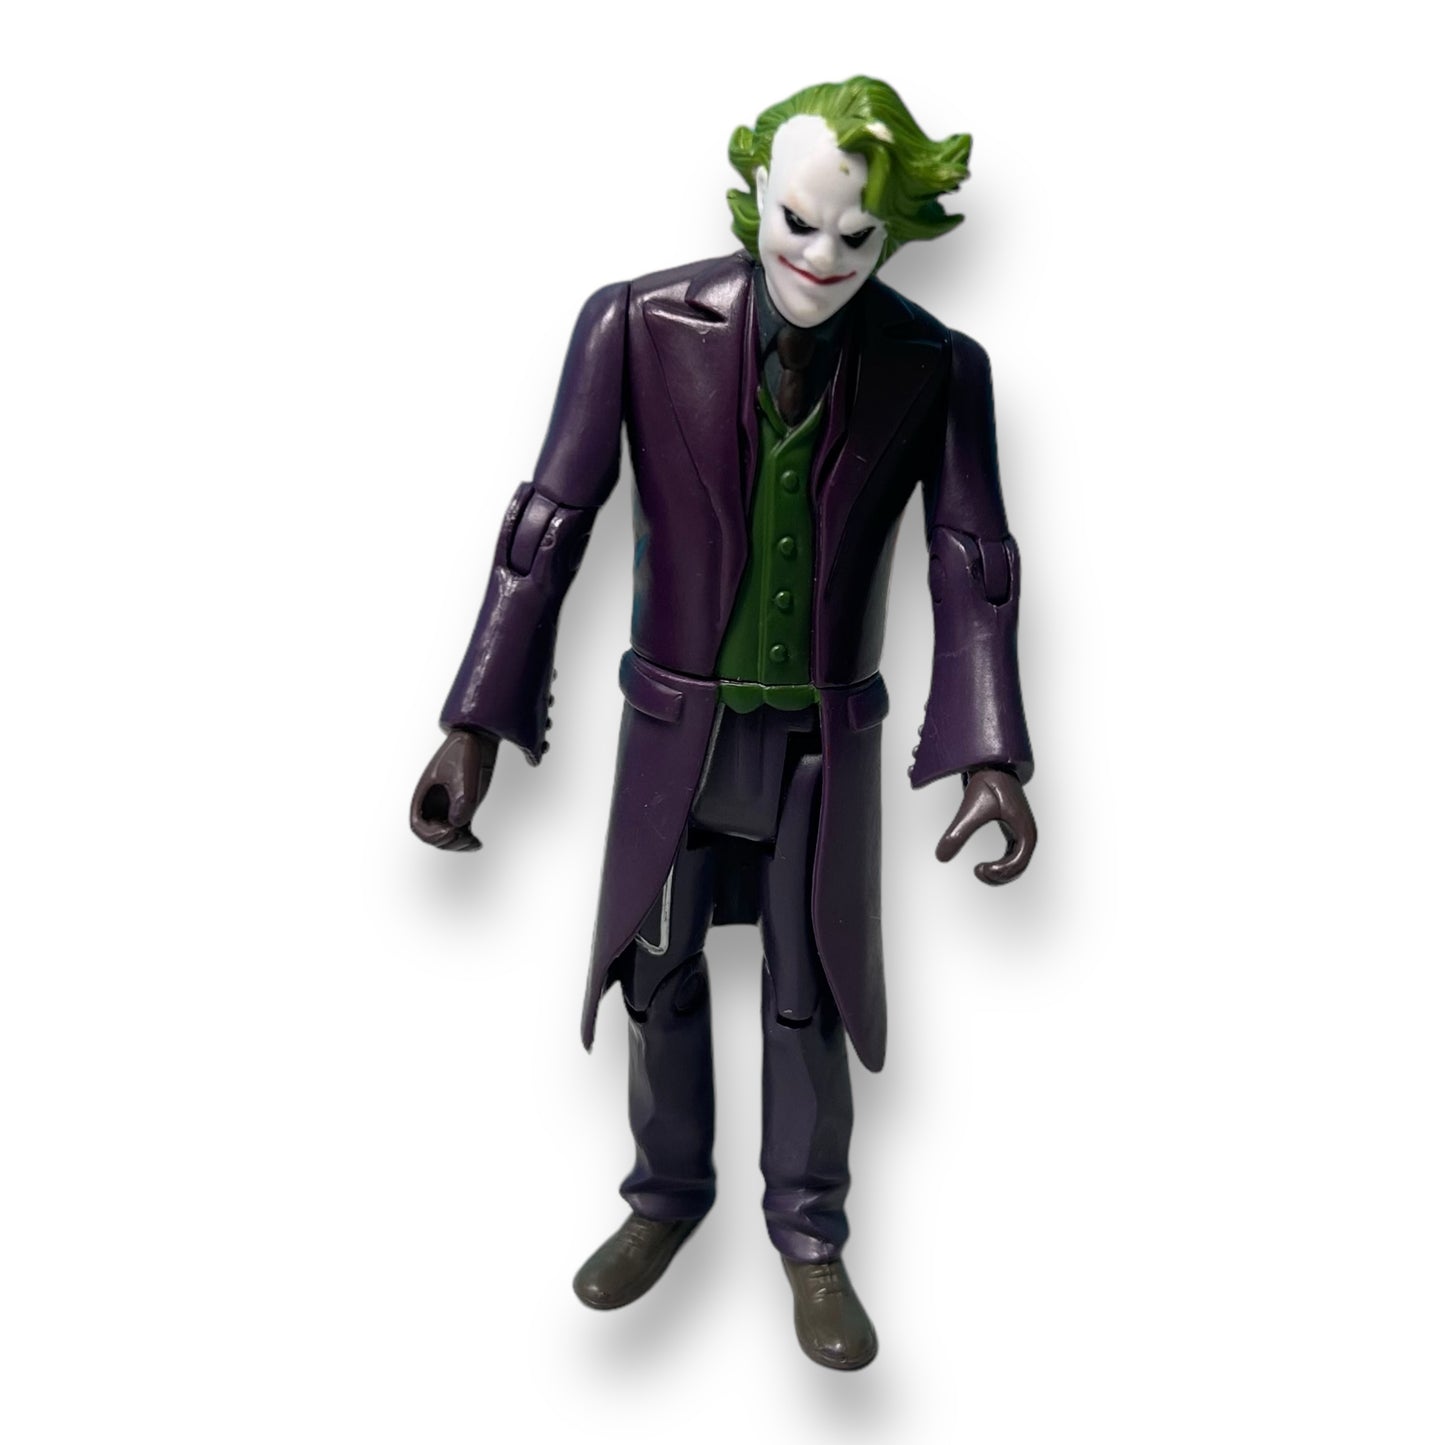 The Dark Knight Movie The Joker Figure, 4"